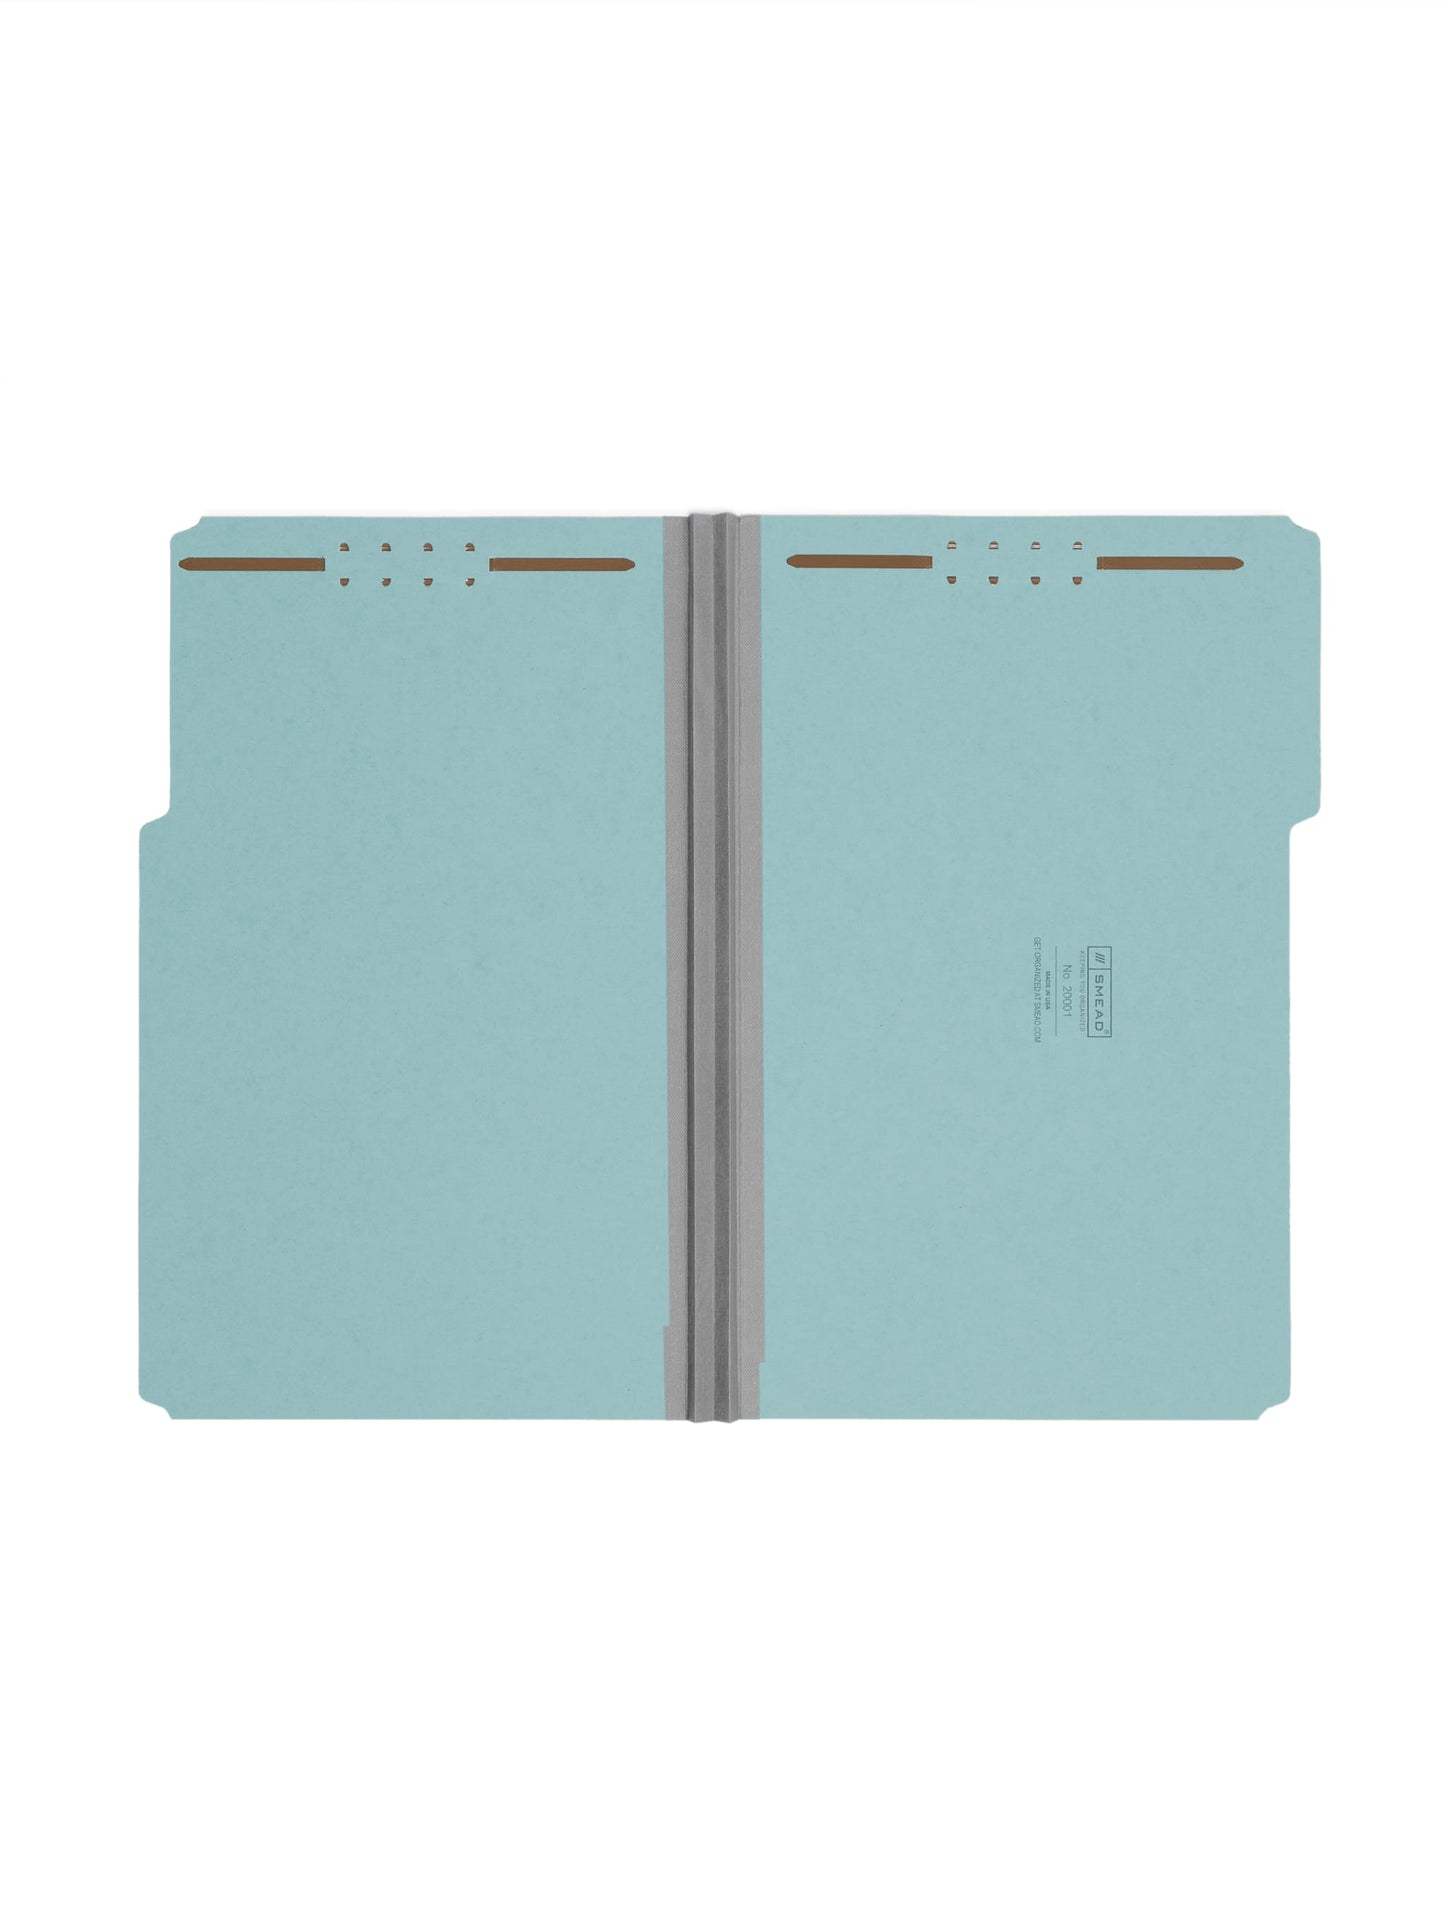 Pressboard Fastener File Folders, 2 inch Expansion, Blue Color, Legal Size, Set of 25, 086486200011